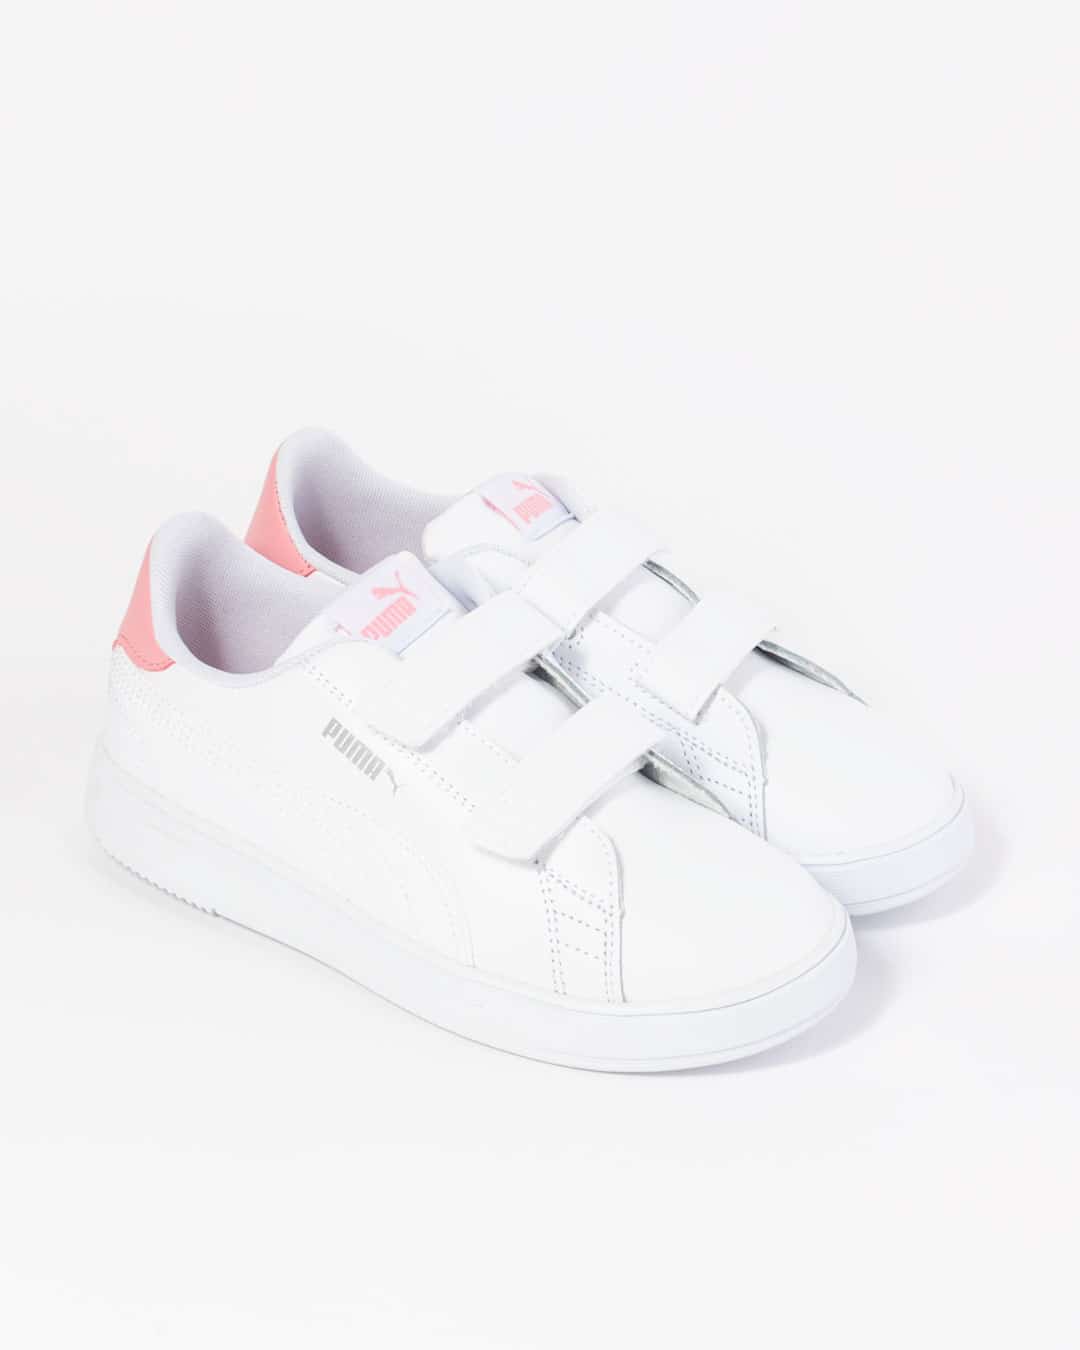 Puma Children's Sneaker White & Pink velcro straps angled shot